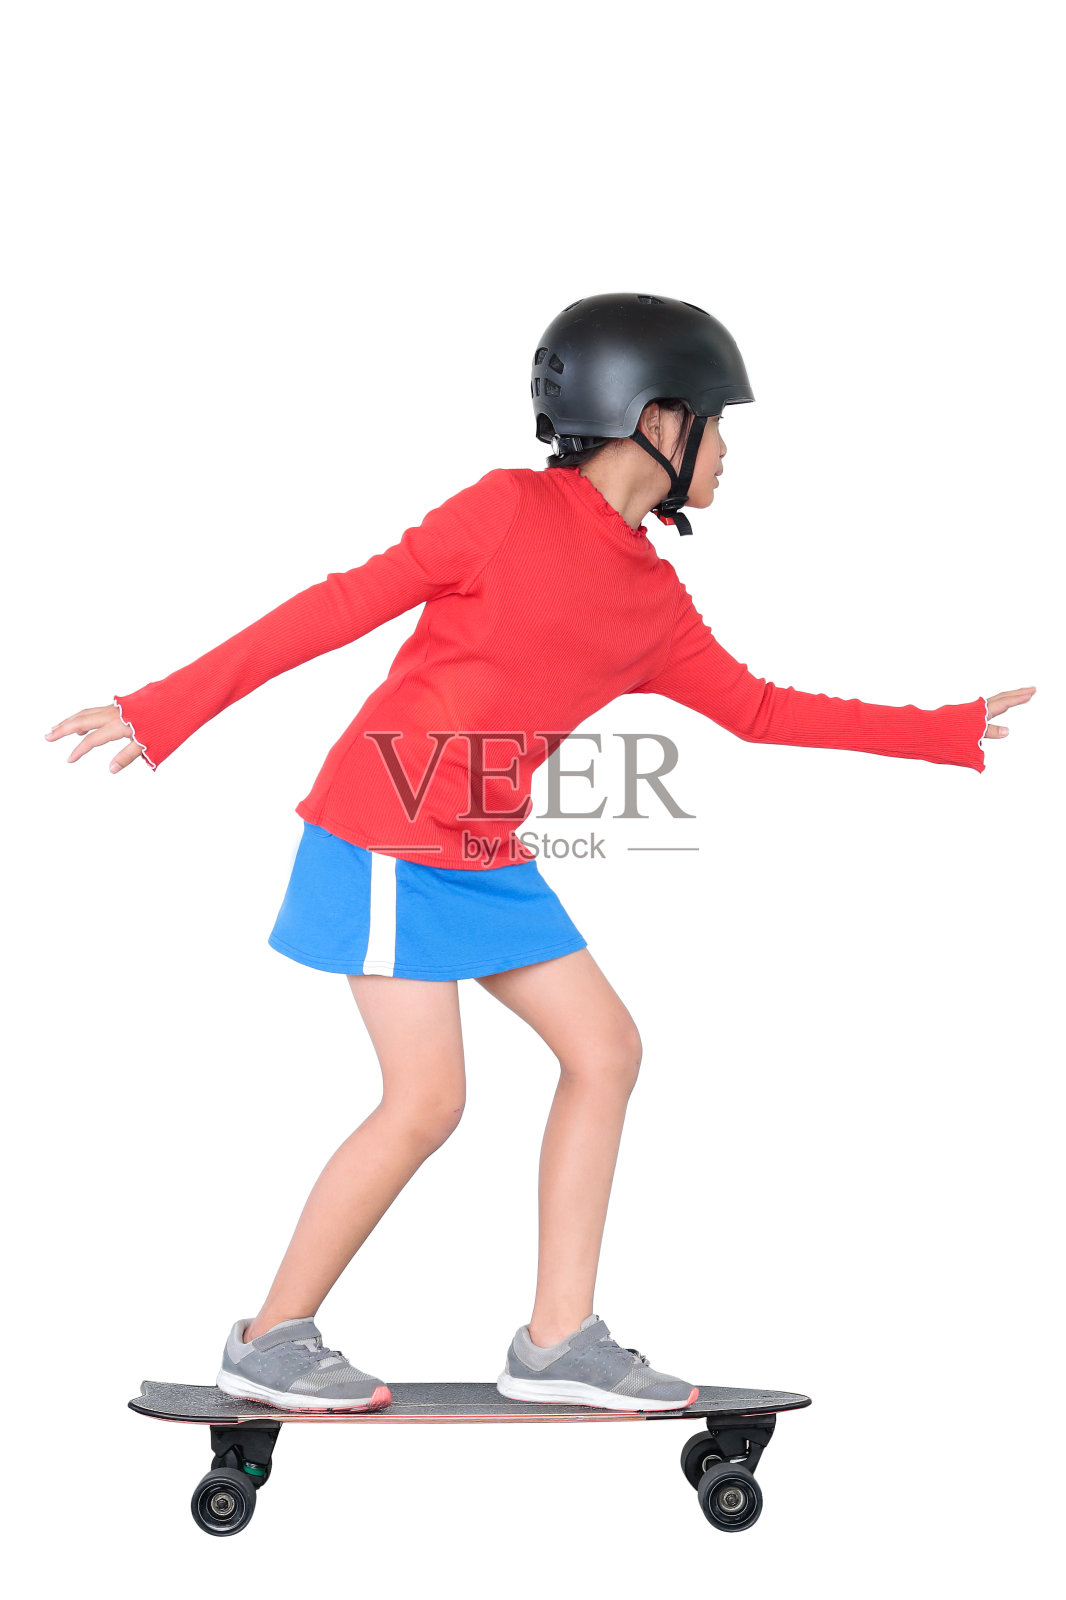 滑板是深受儿童和青少年欢迎的运动。照片摄影图片